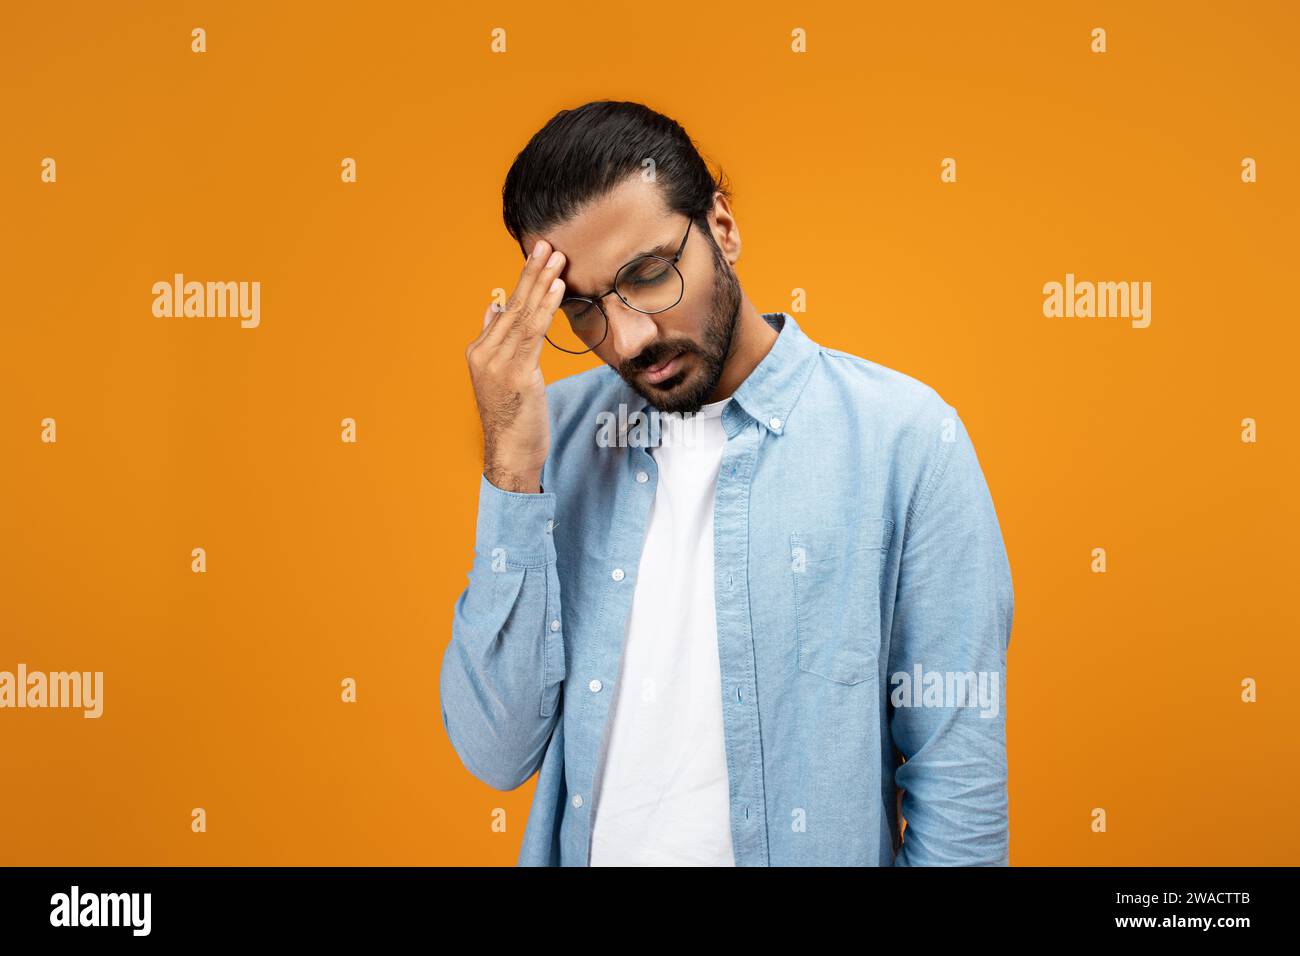 Un uomo pensivo con una camicia in denim azzurro tocca la fronte, mostrando un gesto di preoccupazione Foto Stock